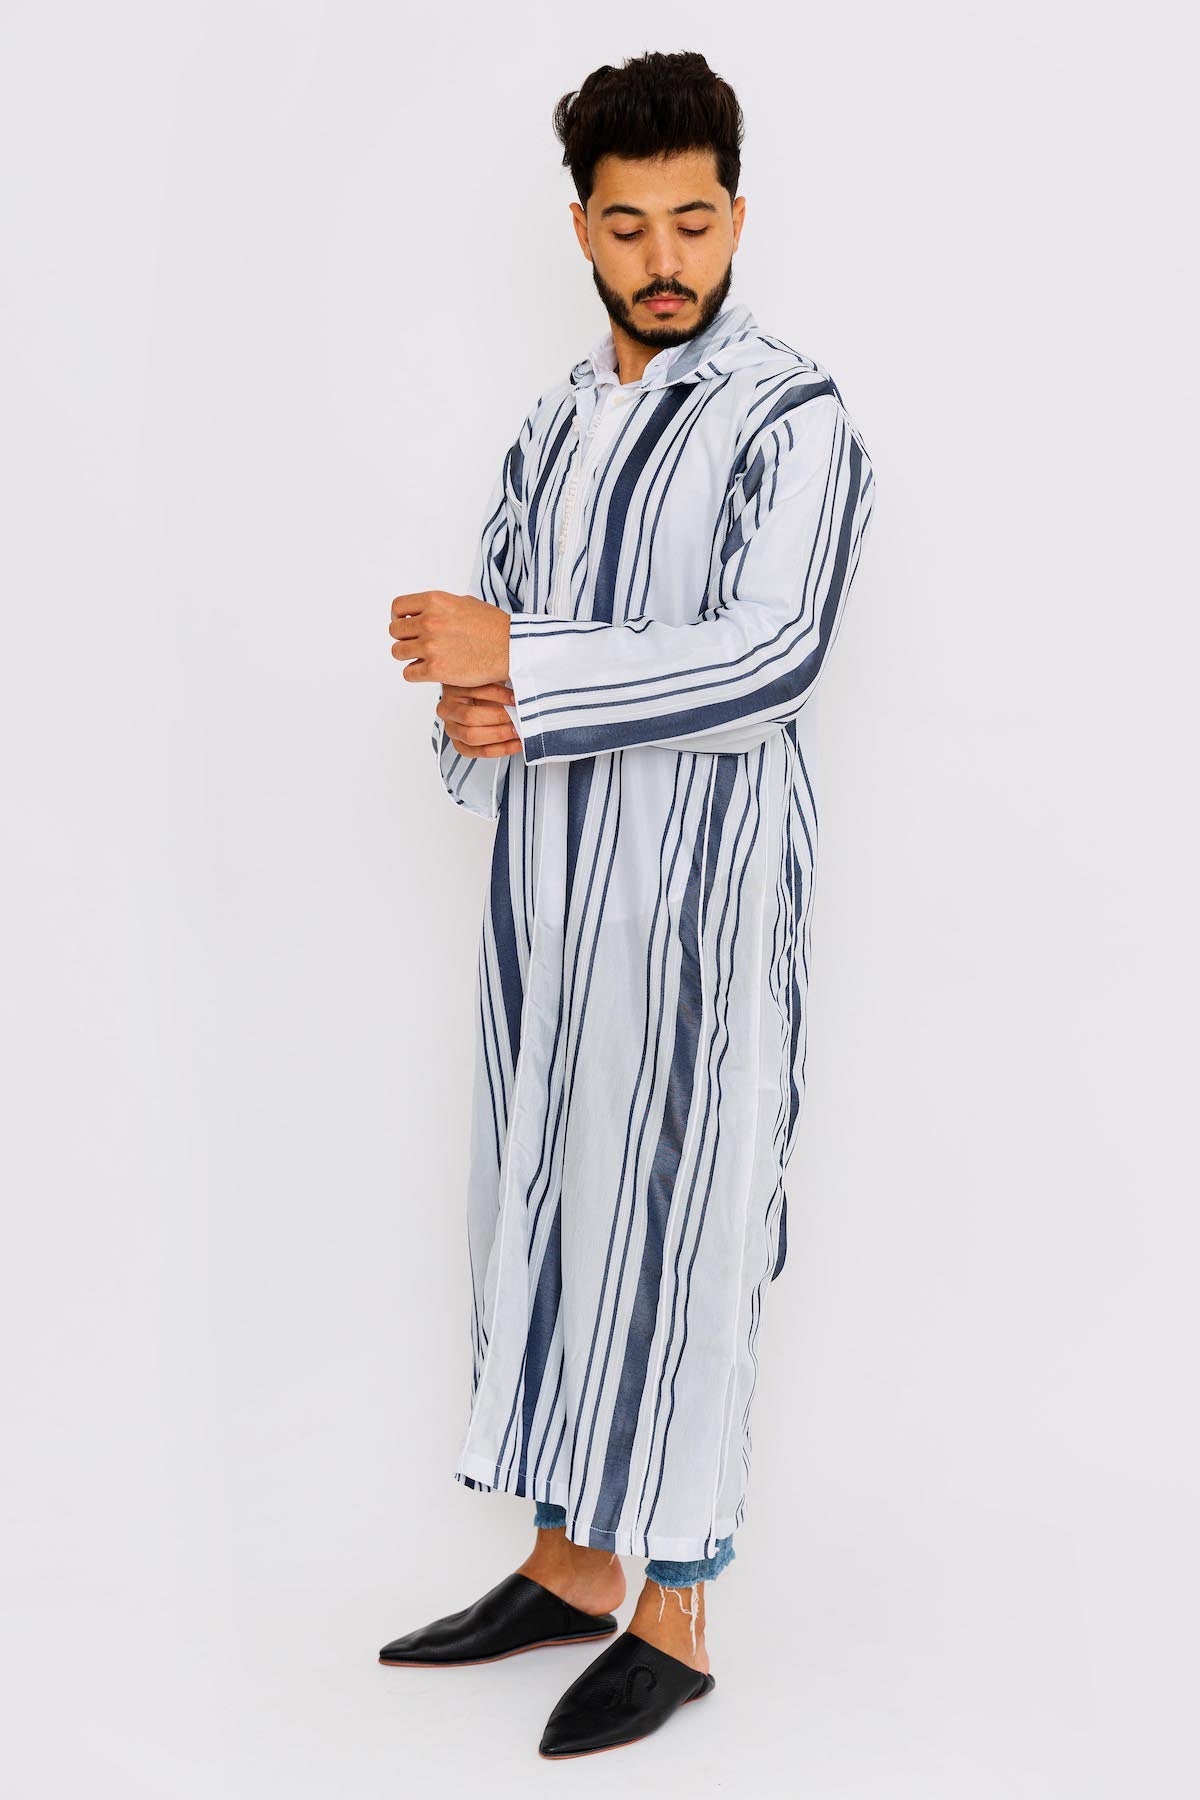 Chahma Men's Hooded Thobe Djellaba in Blue & White Stripes